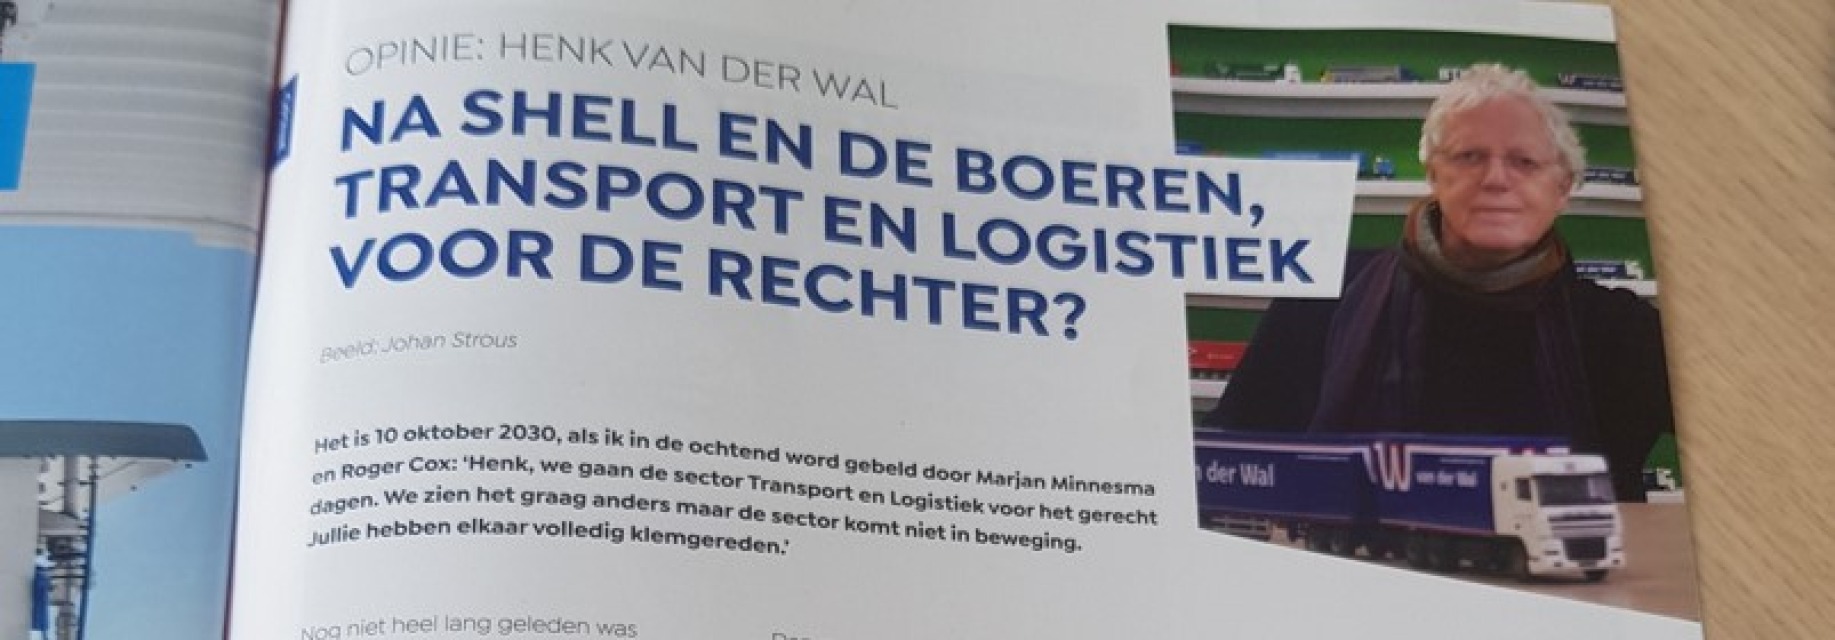 Henk van der Wal in TLN HUB: Klimaatzaak tegen sector transport & logistiek